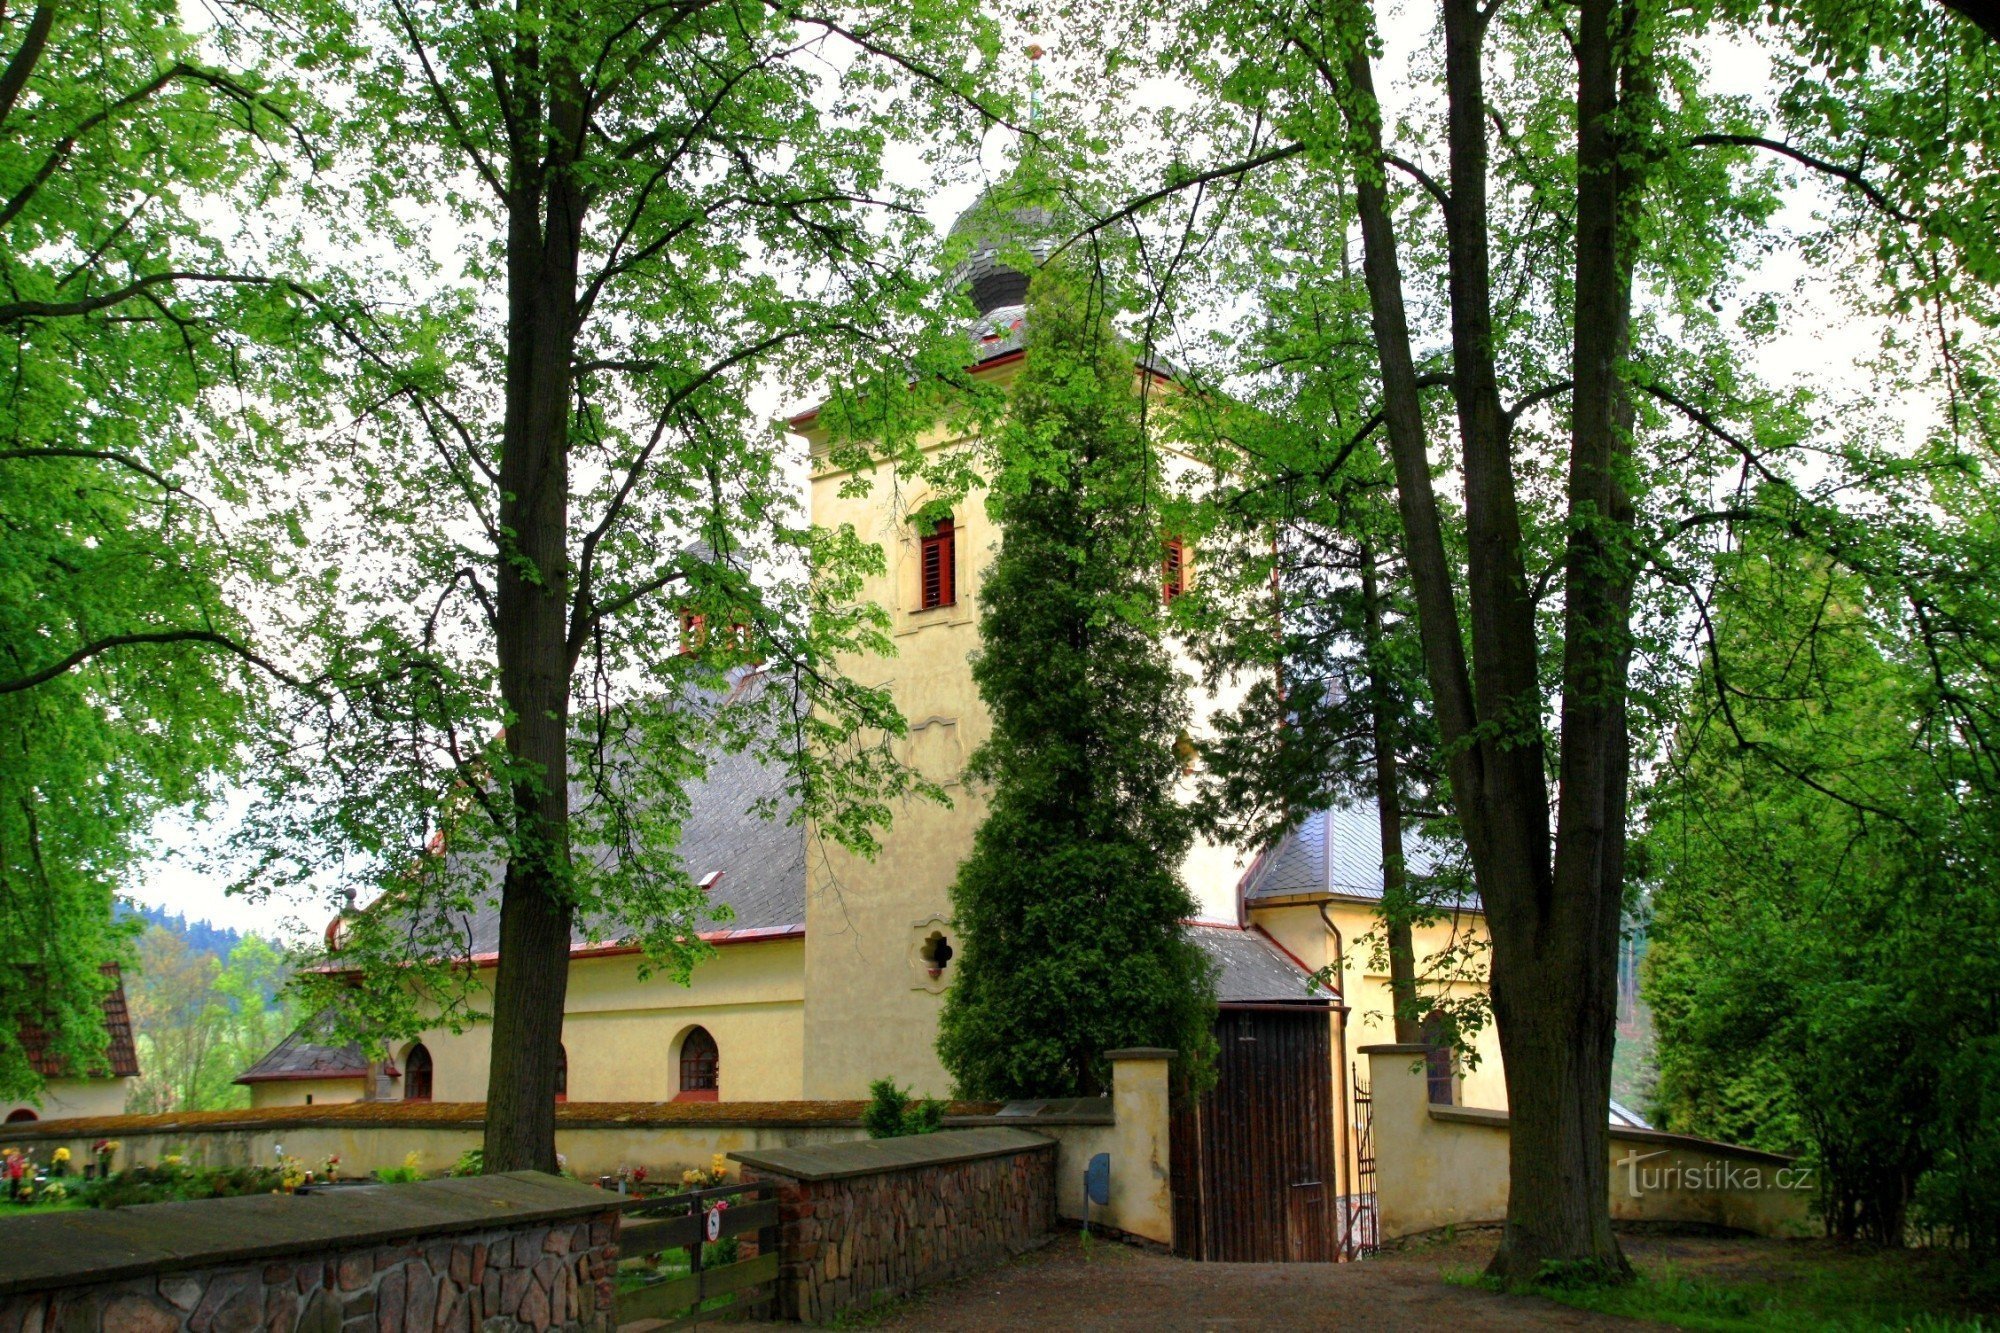 Jablonné nad Orlicí - Pyhän Nikolauksen kirkko. Bartolomeus